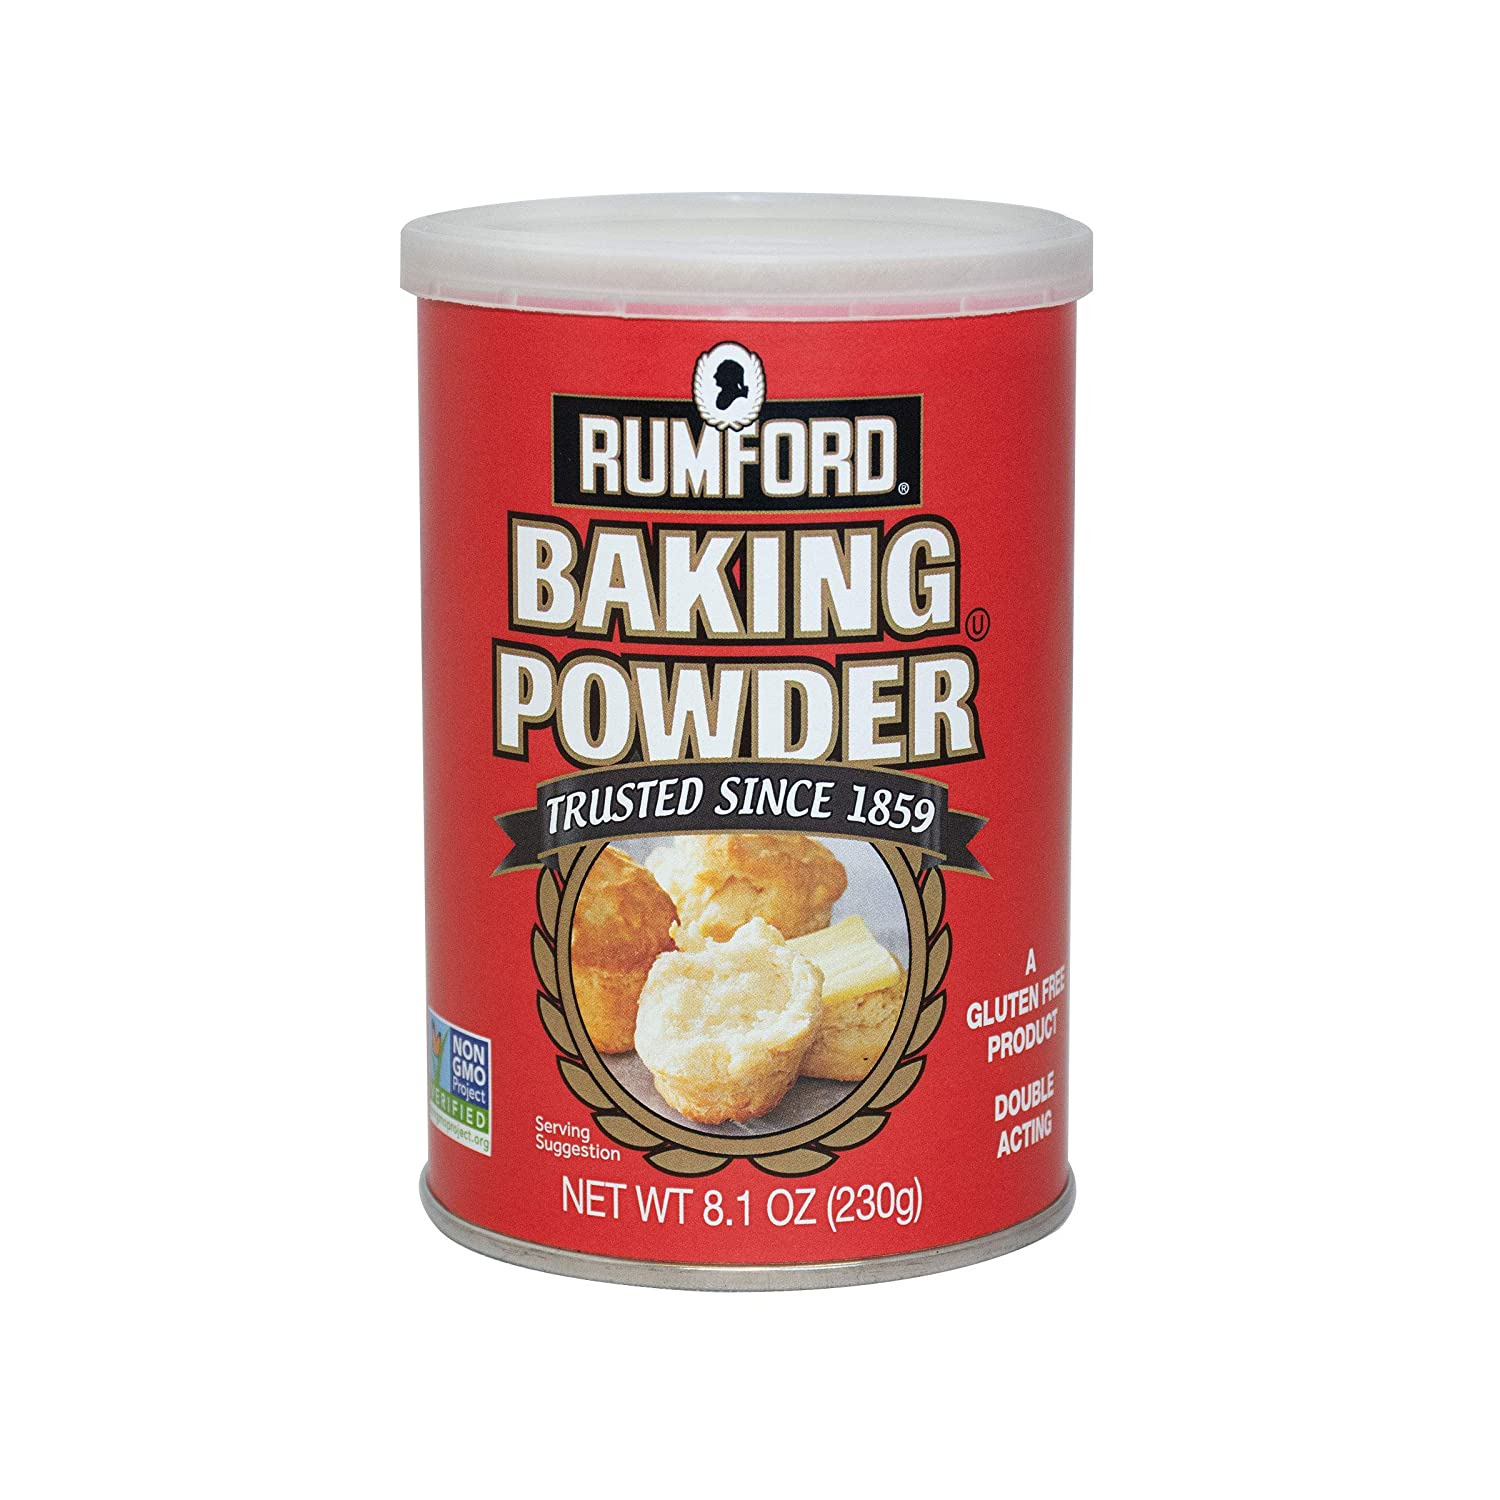 Rumford Double Action Baking Powder 8.1 oz